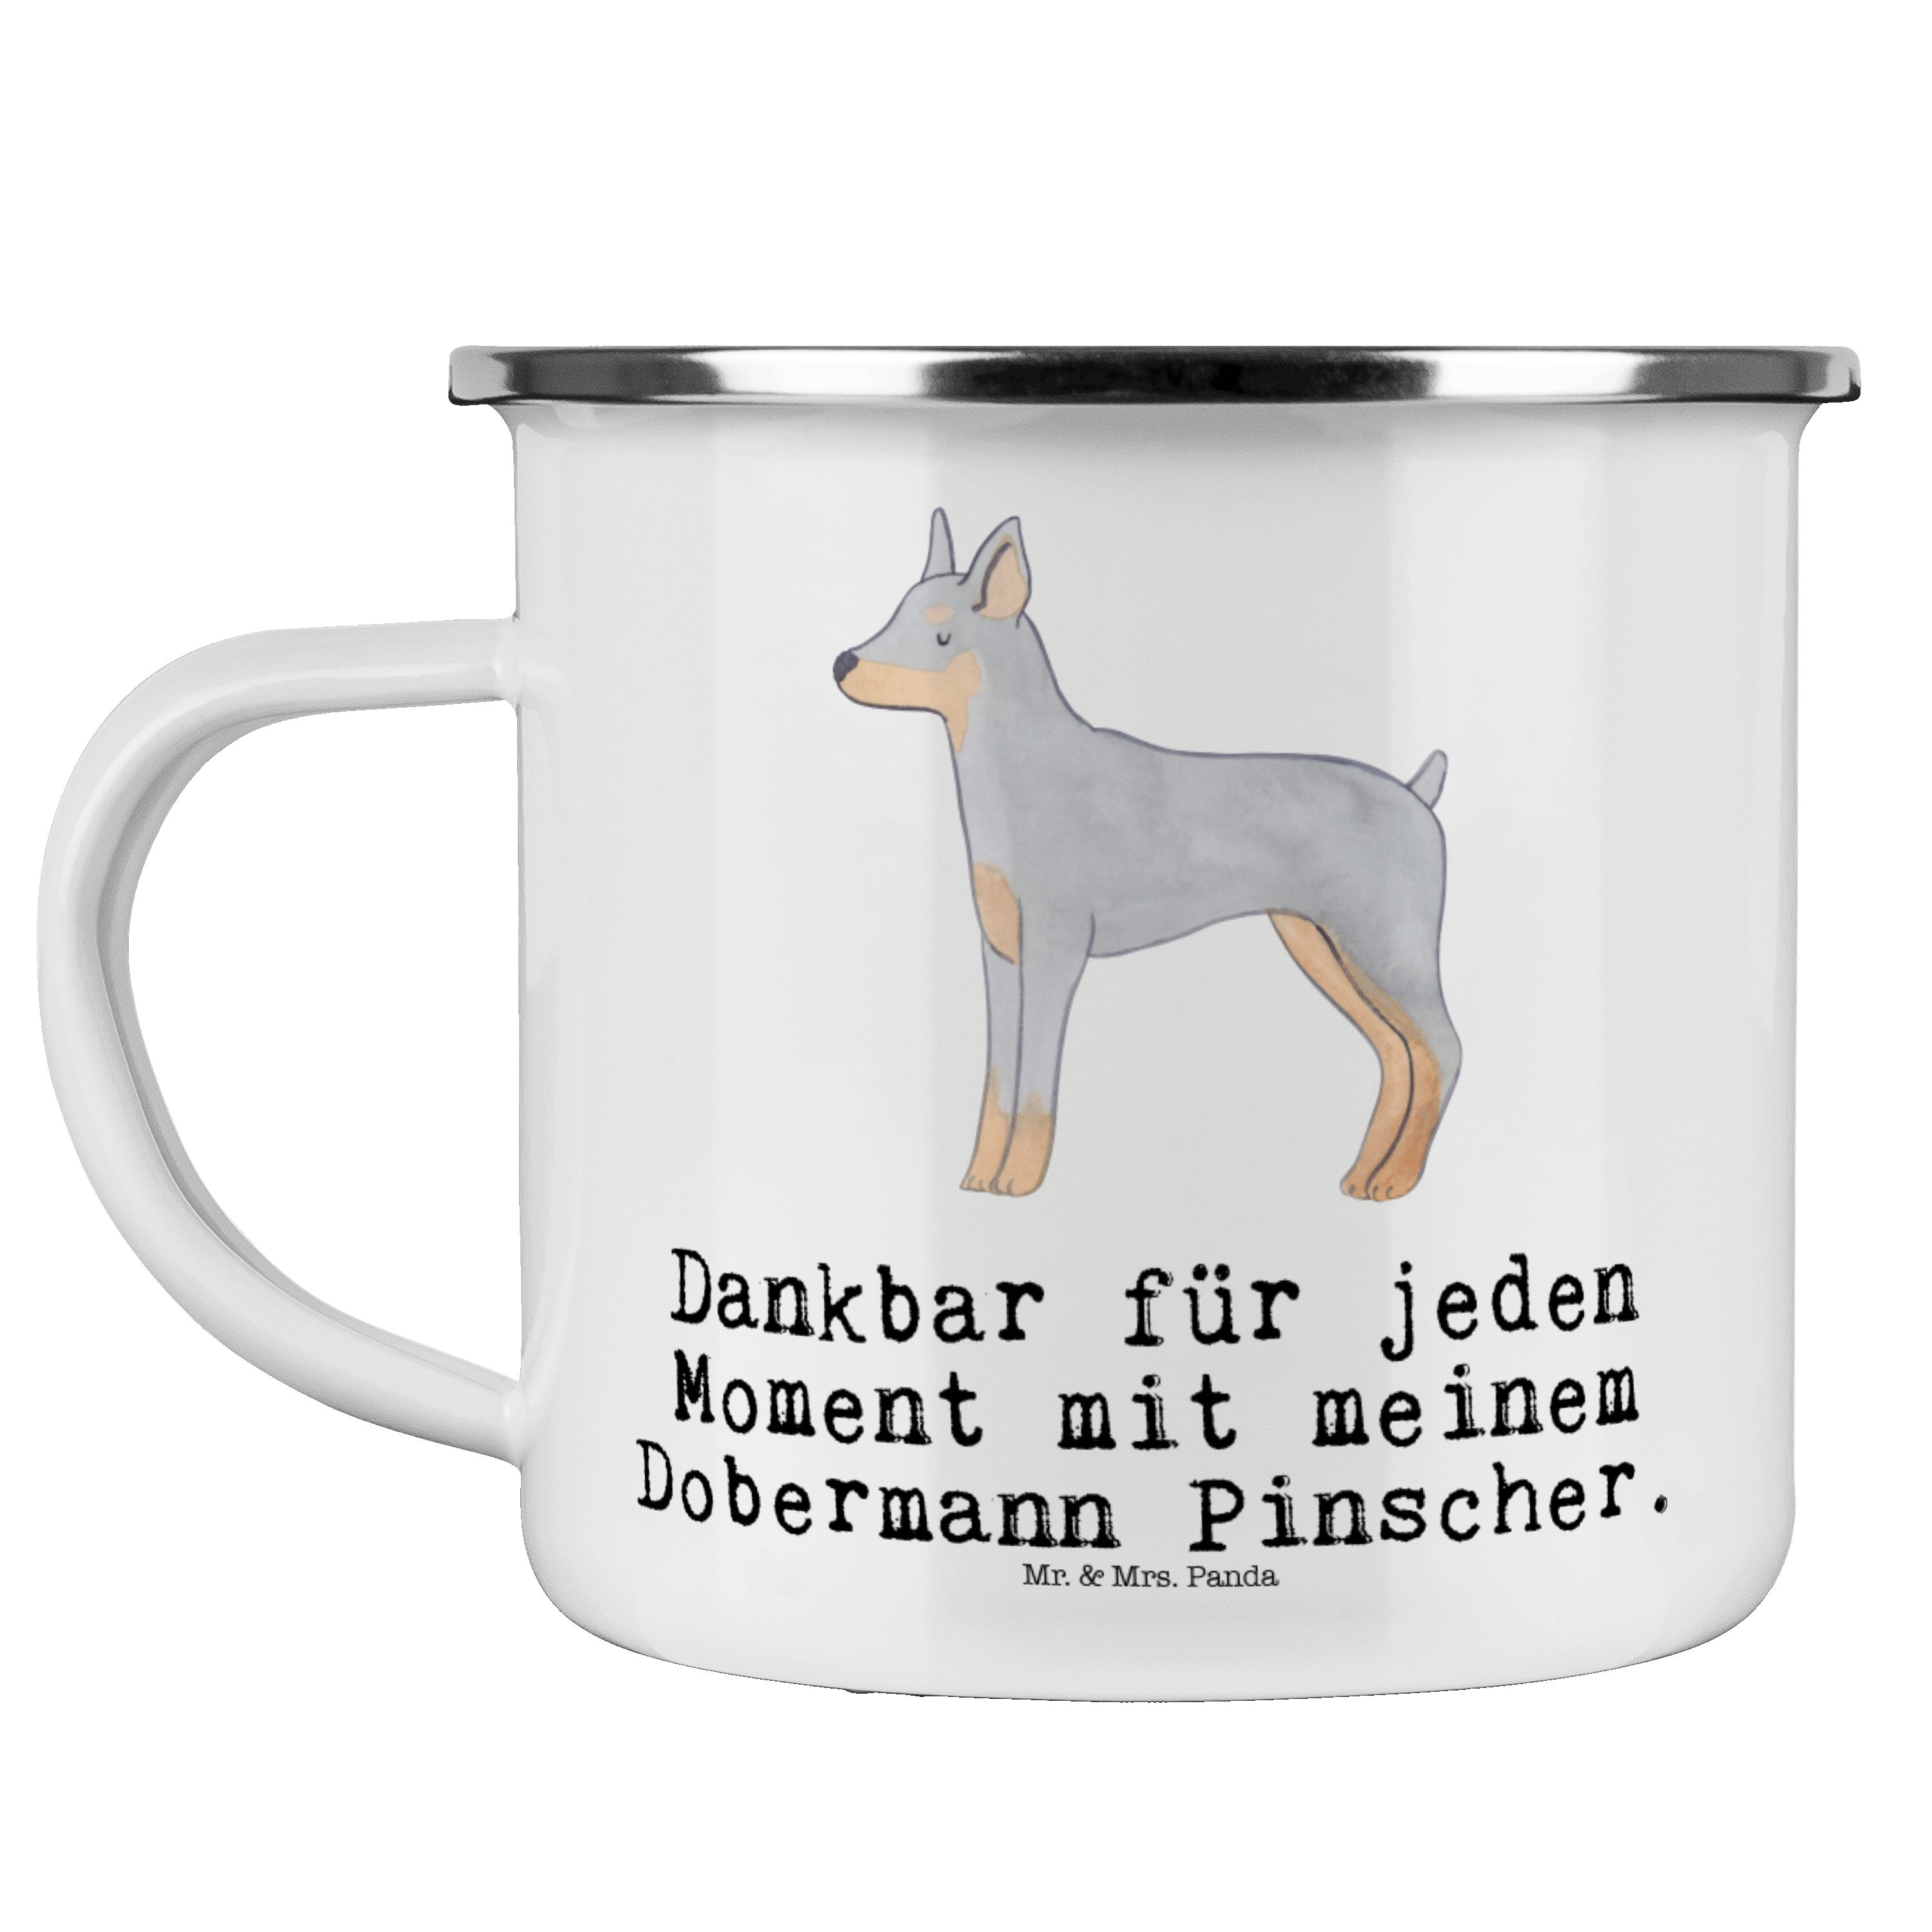 Mr. & Mrs. Panda Edelstahl Moment - Pinscher Weiß Hund, Becher - Dobermann Trinkbec, Emaille Geschenk